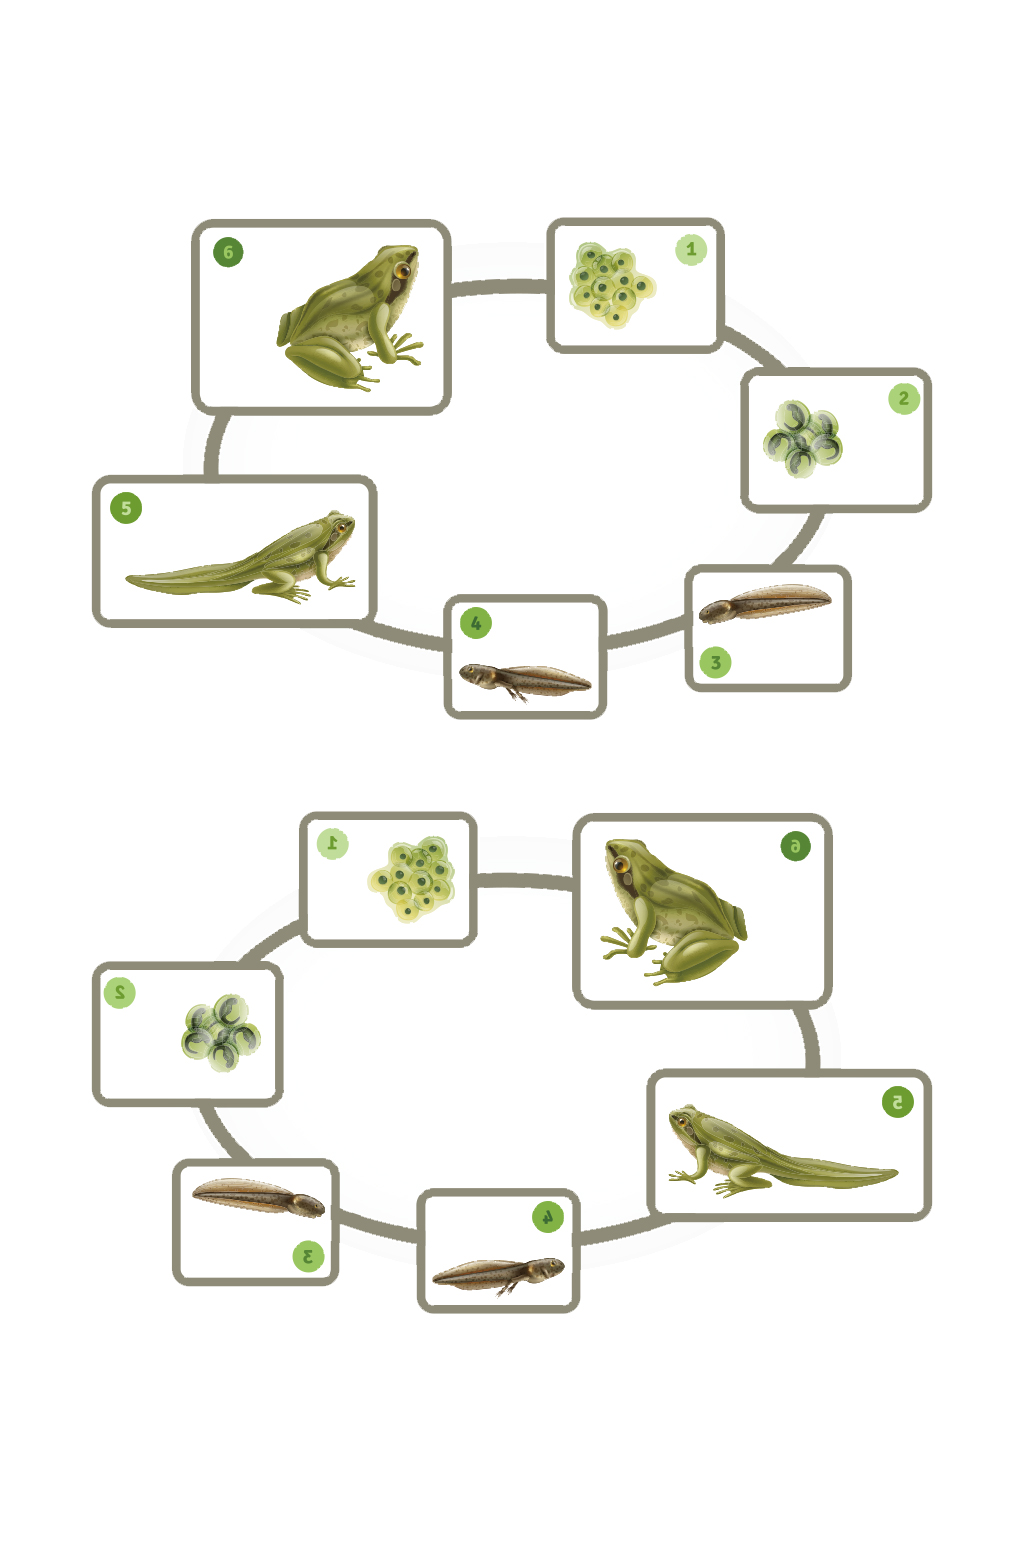 青蛙进化过程图片大全图片